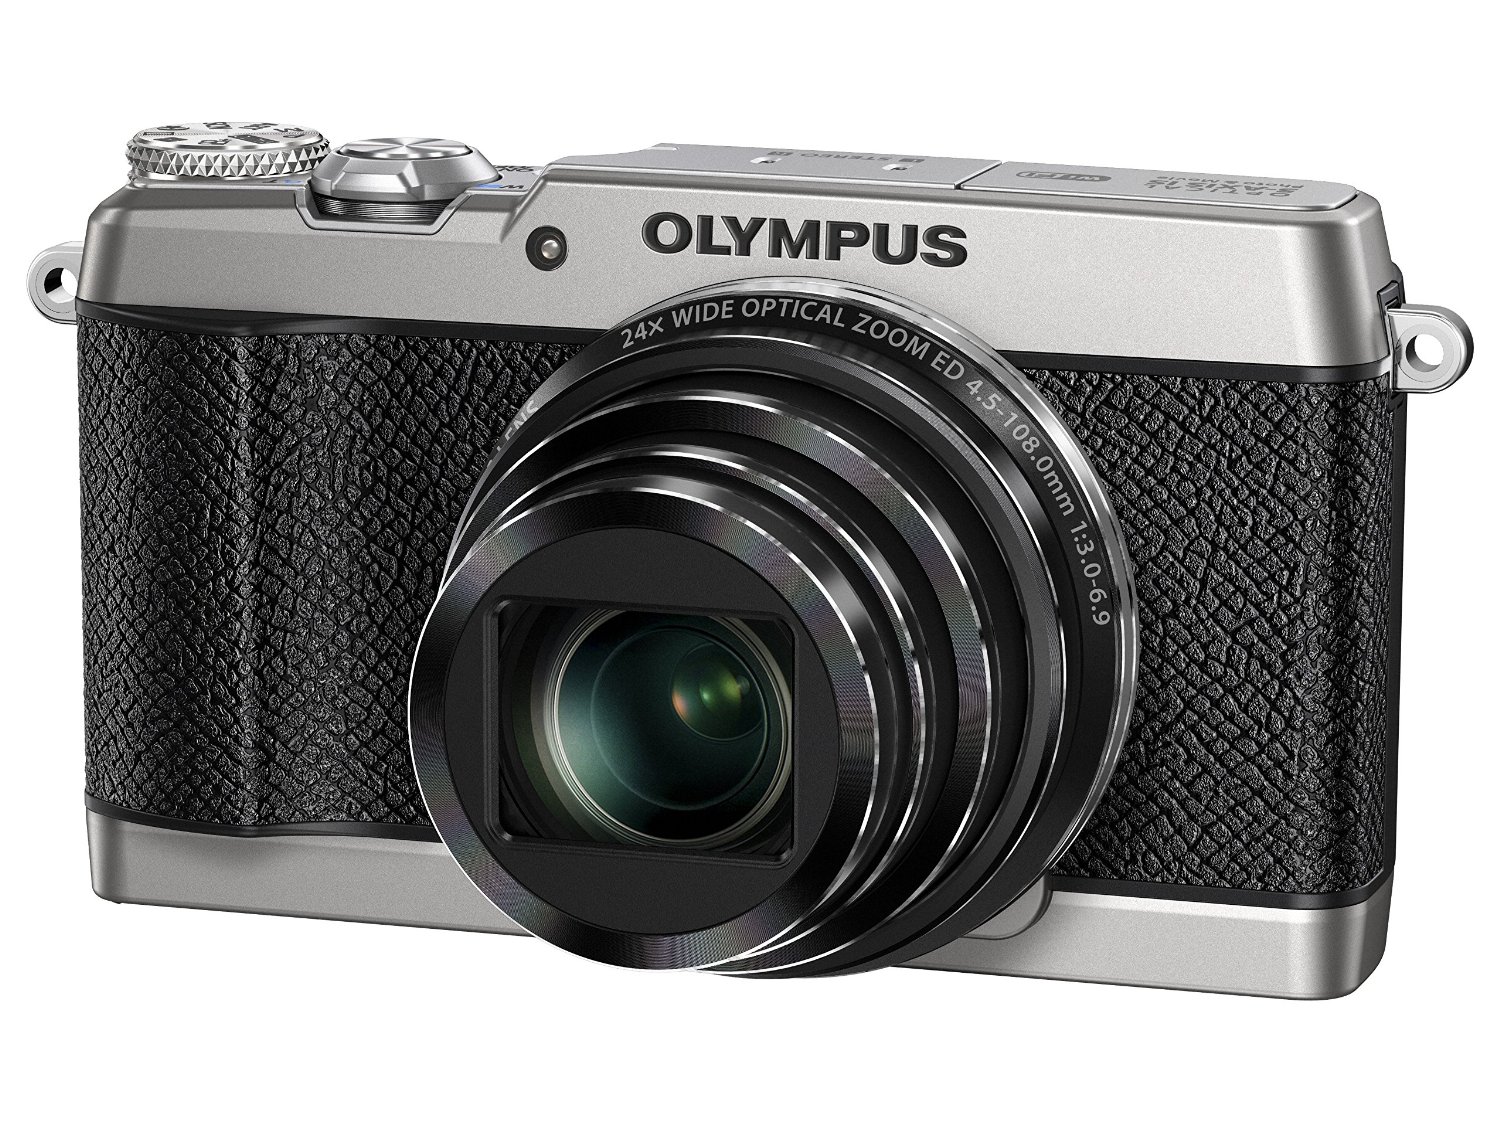 OLYMPUS(オリンパス)のコンパクトデジタルカメラなど計3点を